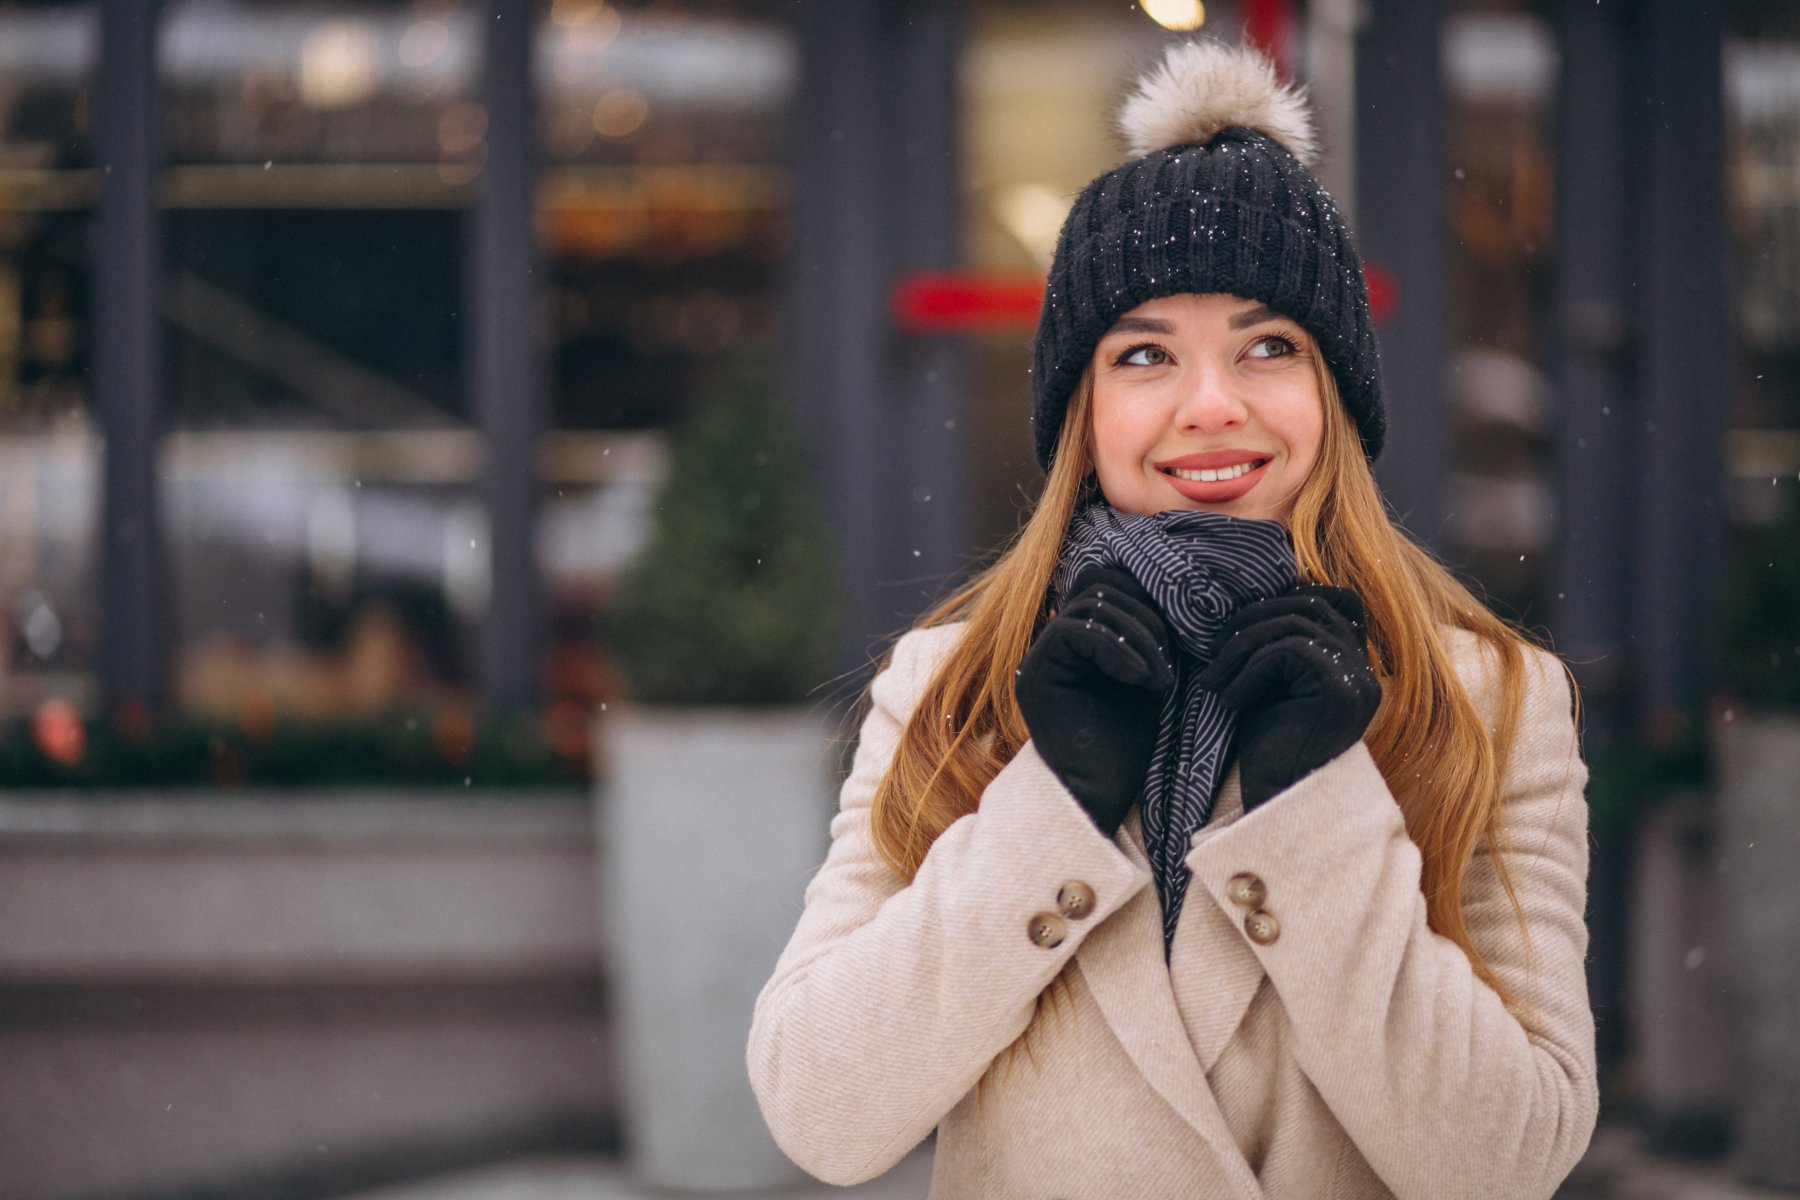 Сохранить тепло: врачи напомнили о необходимости носить шапку и перчатки зимой 